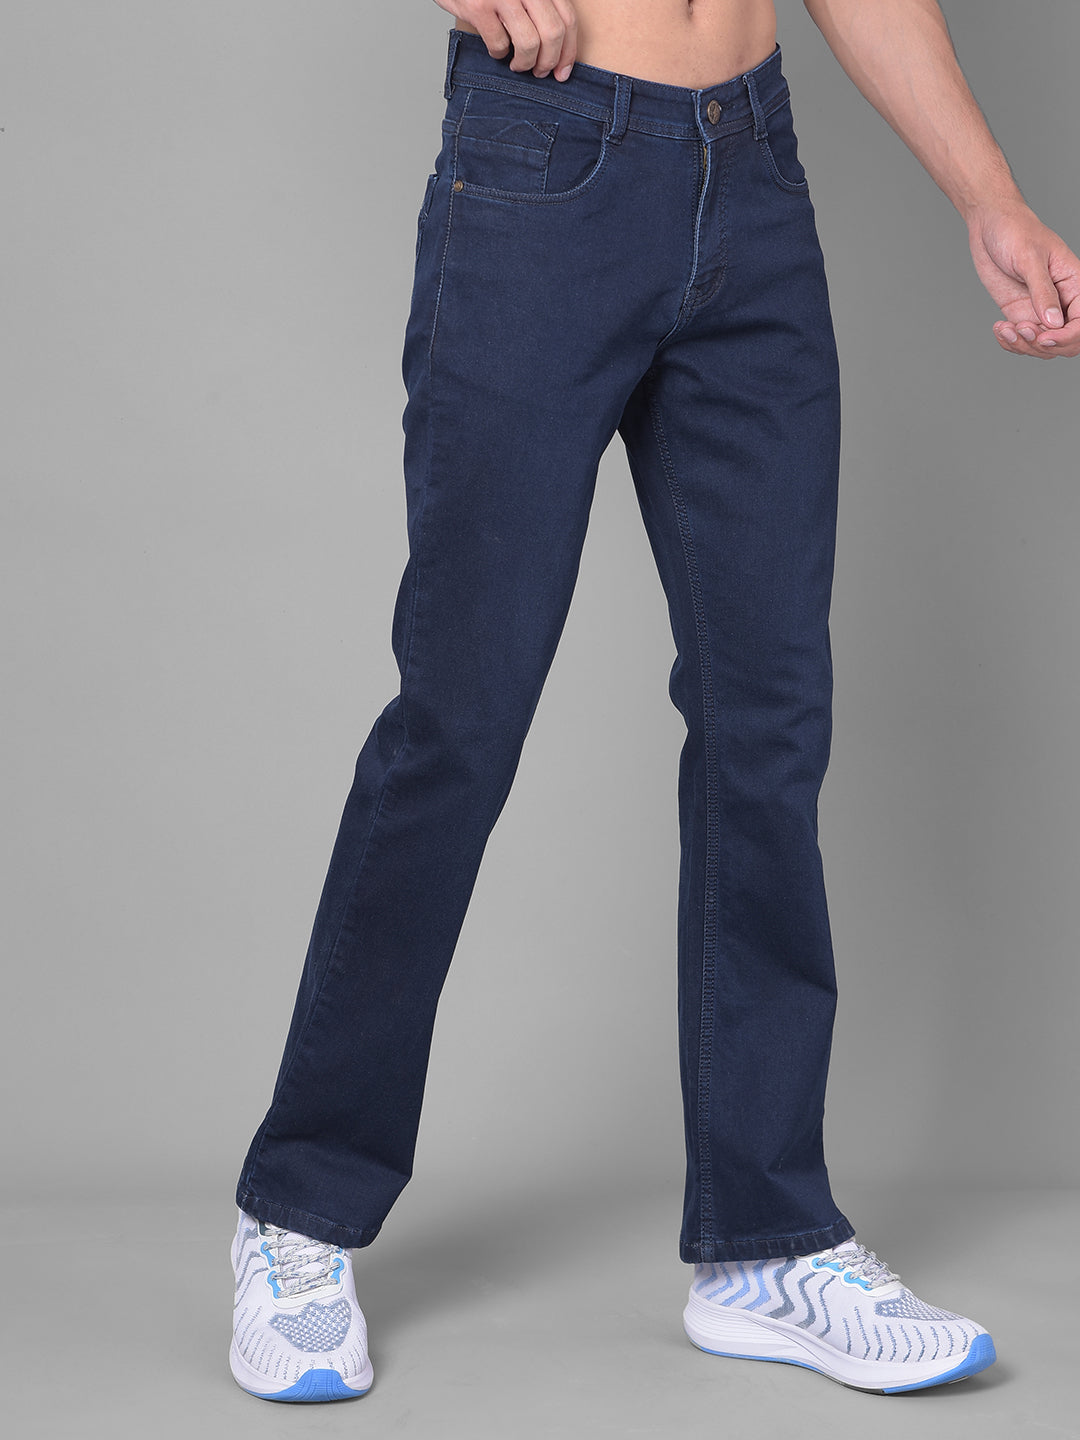 Cobb Bound Navy Blue Bootcut Premium Jeans